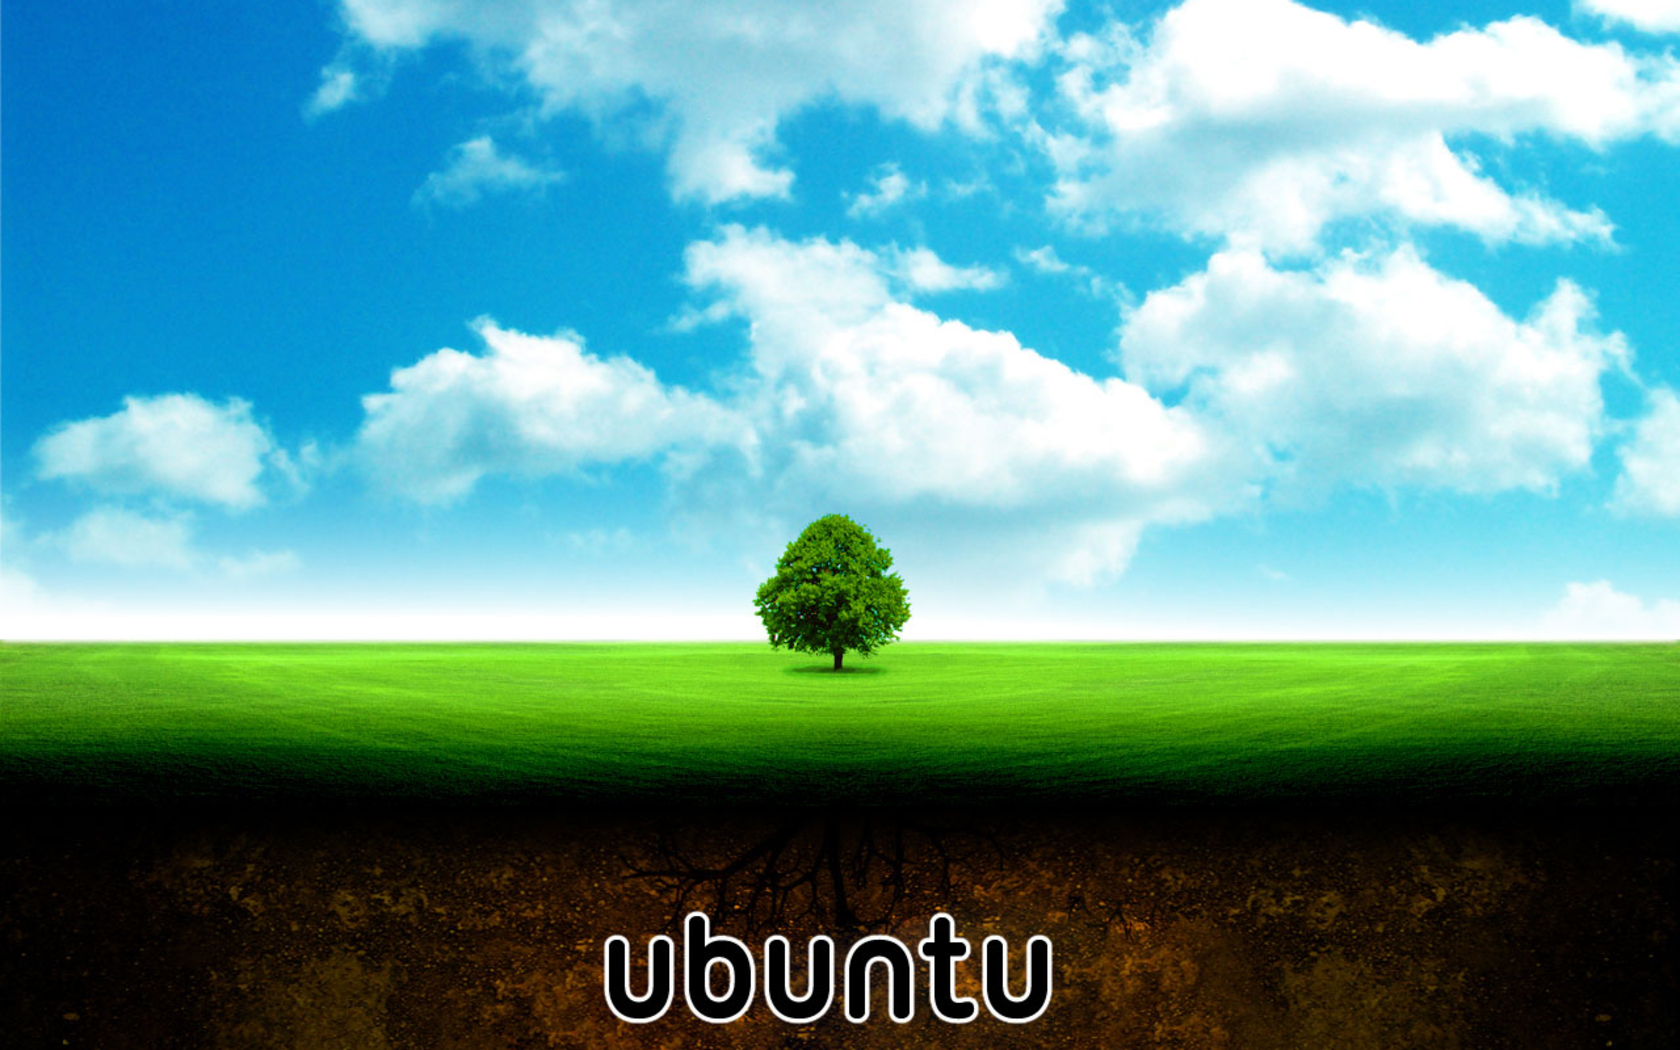 Bạn đang tìm kiếm một hình nền Ubuntu đẹp? Hãy thoả sức lựa chọn với bộ sưu tập nhiều chủ đề và tính năng độc đáo. Hãy nhấn vào để thấy hình nền Ubuntu trong cảnh thiên nhiên hoặc thiết kế sáng tạo.